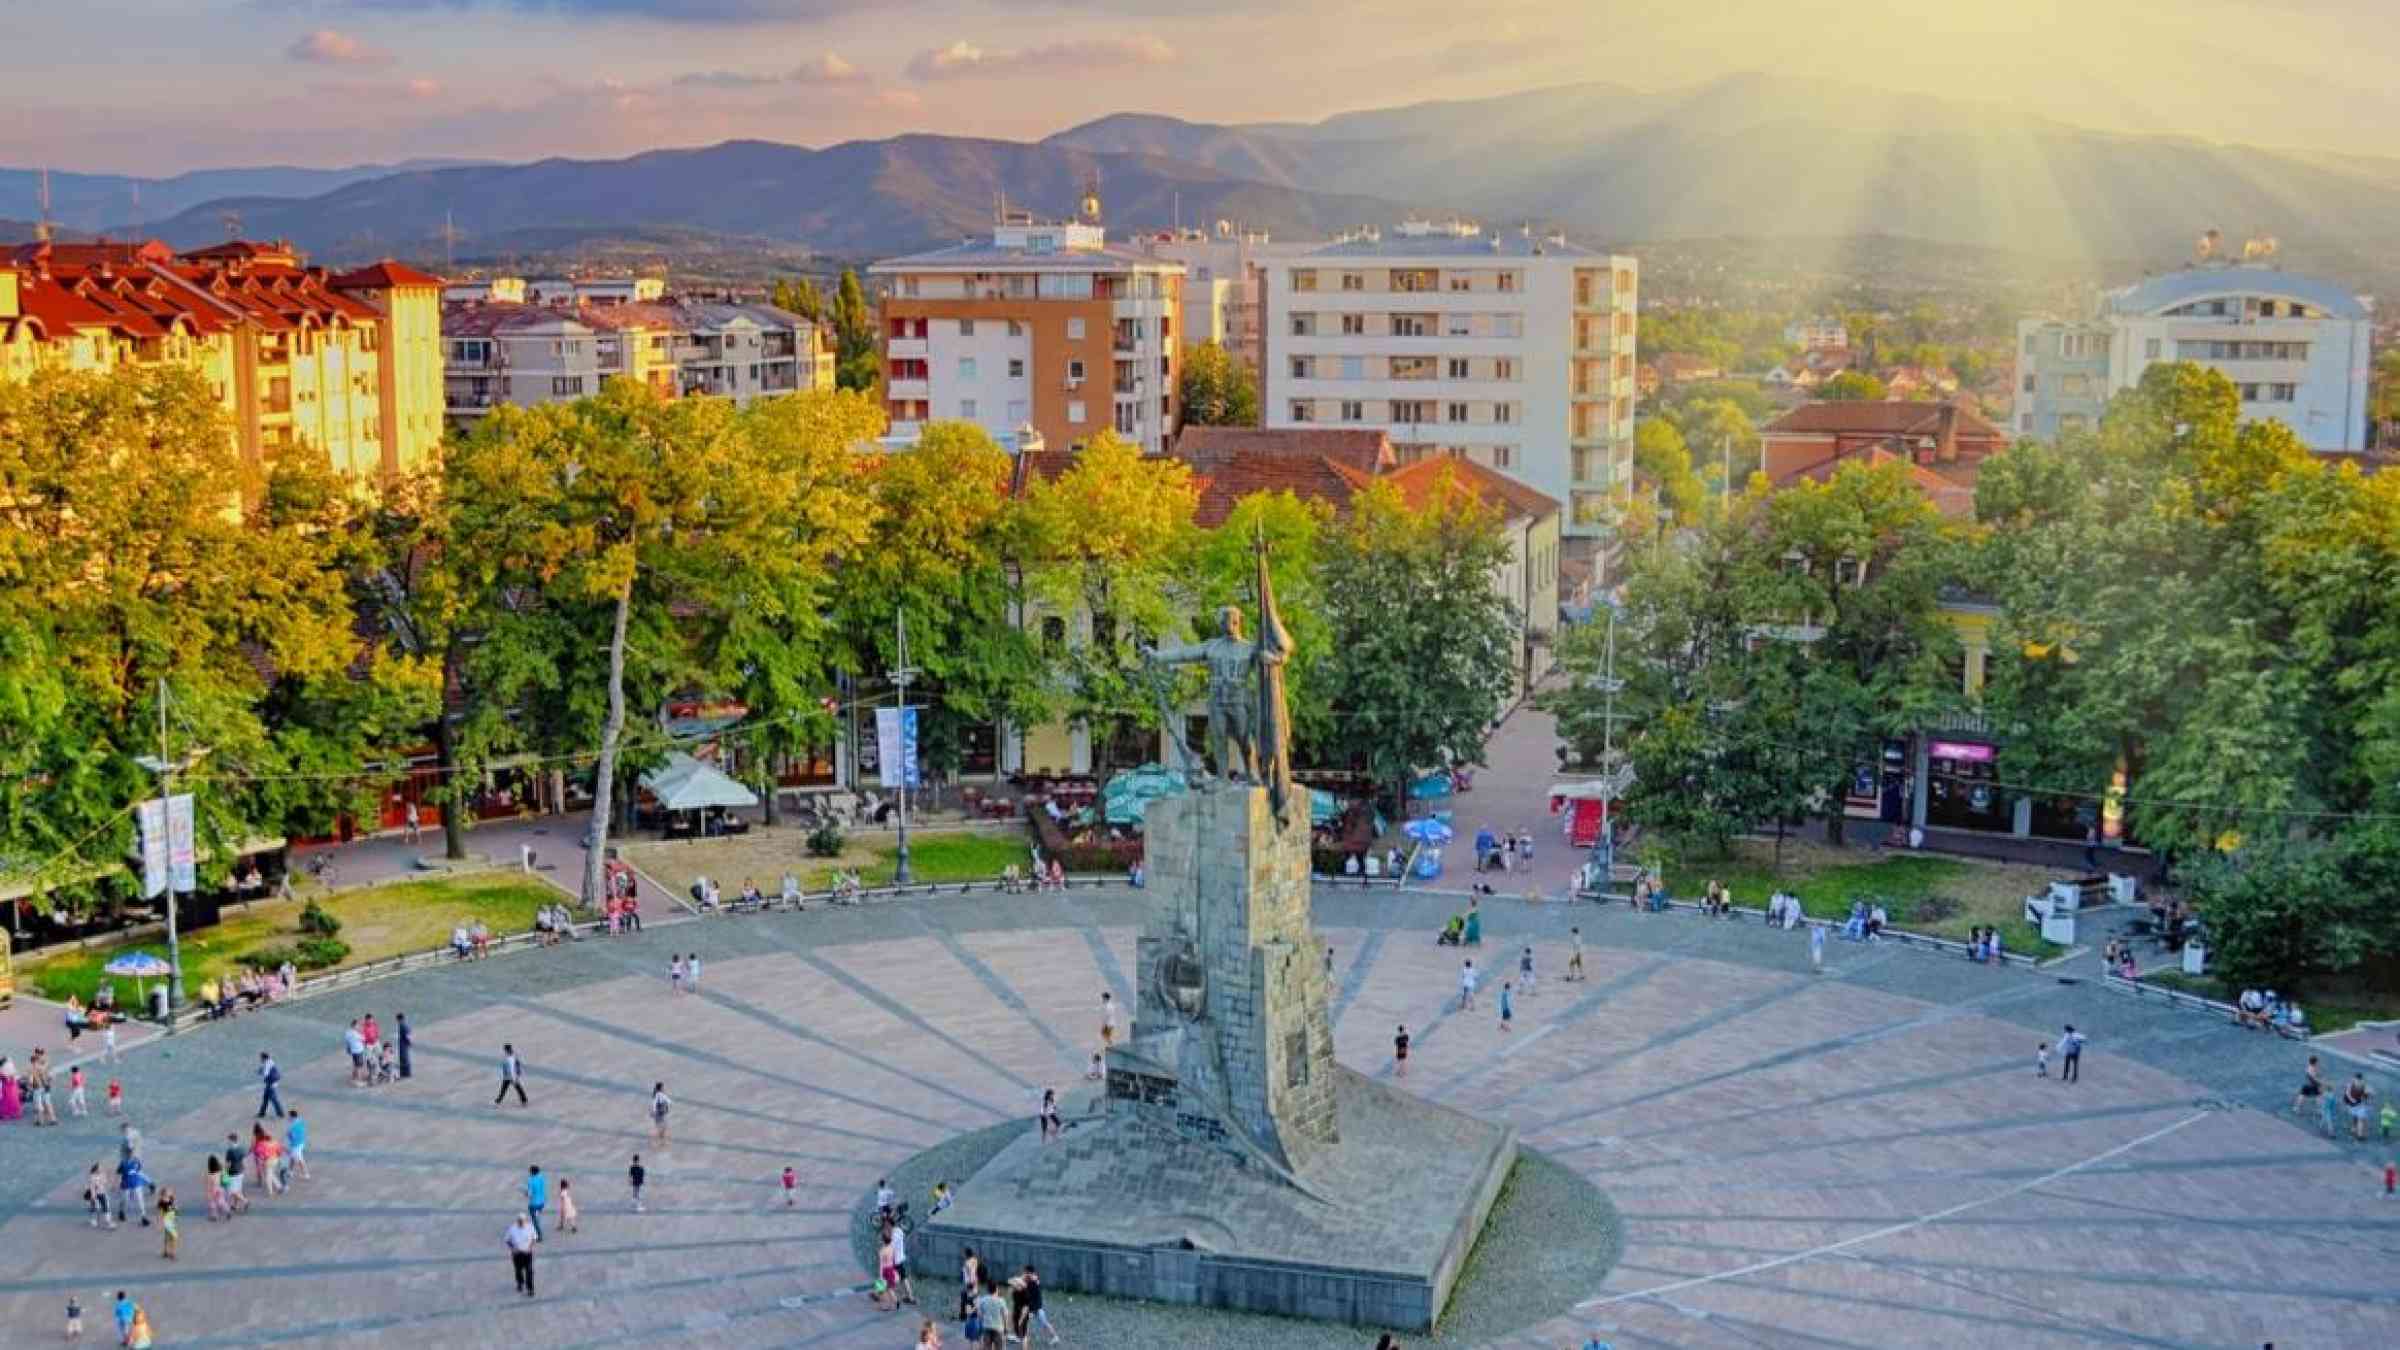 Kraljevo's main square. Bojan Milinkov/Shutterstock